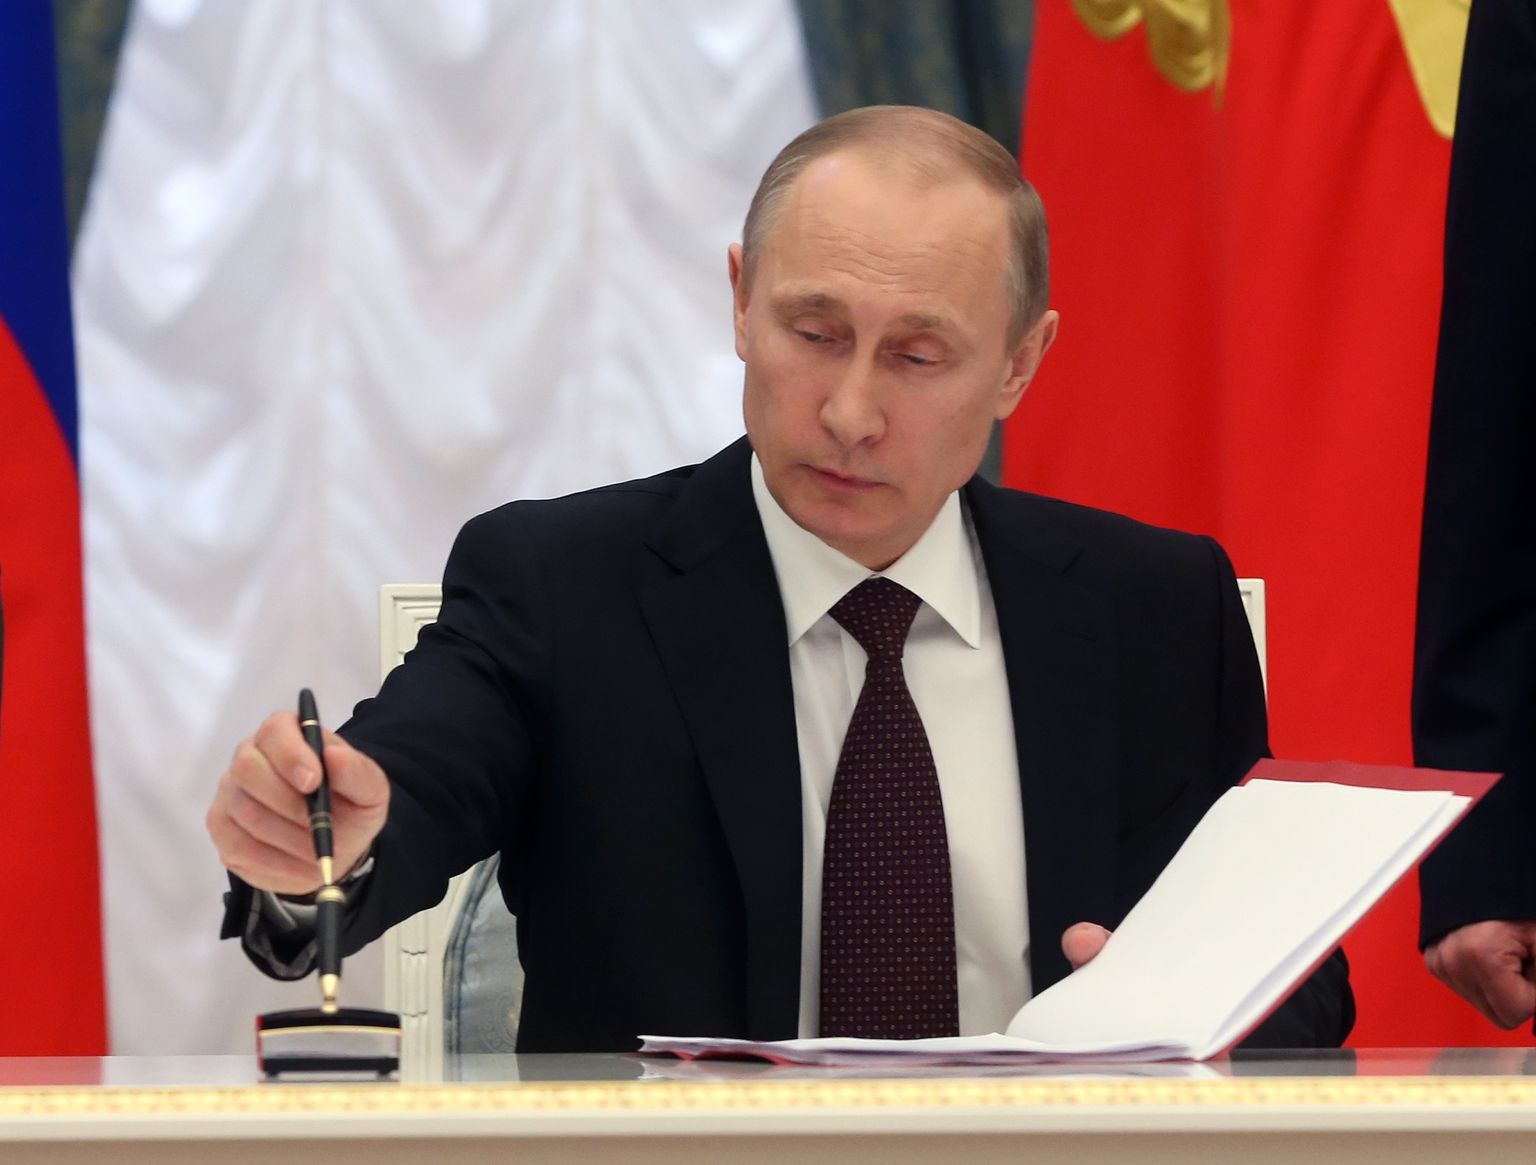 Venemaa president Vladimir Putin 21. märtsil 2014 Kremlis Krimmi Venemaa osaks kuulutavatele seaduseelnõudele alla kirjutamas.